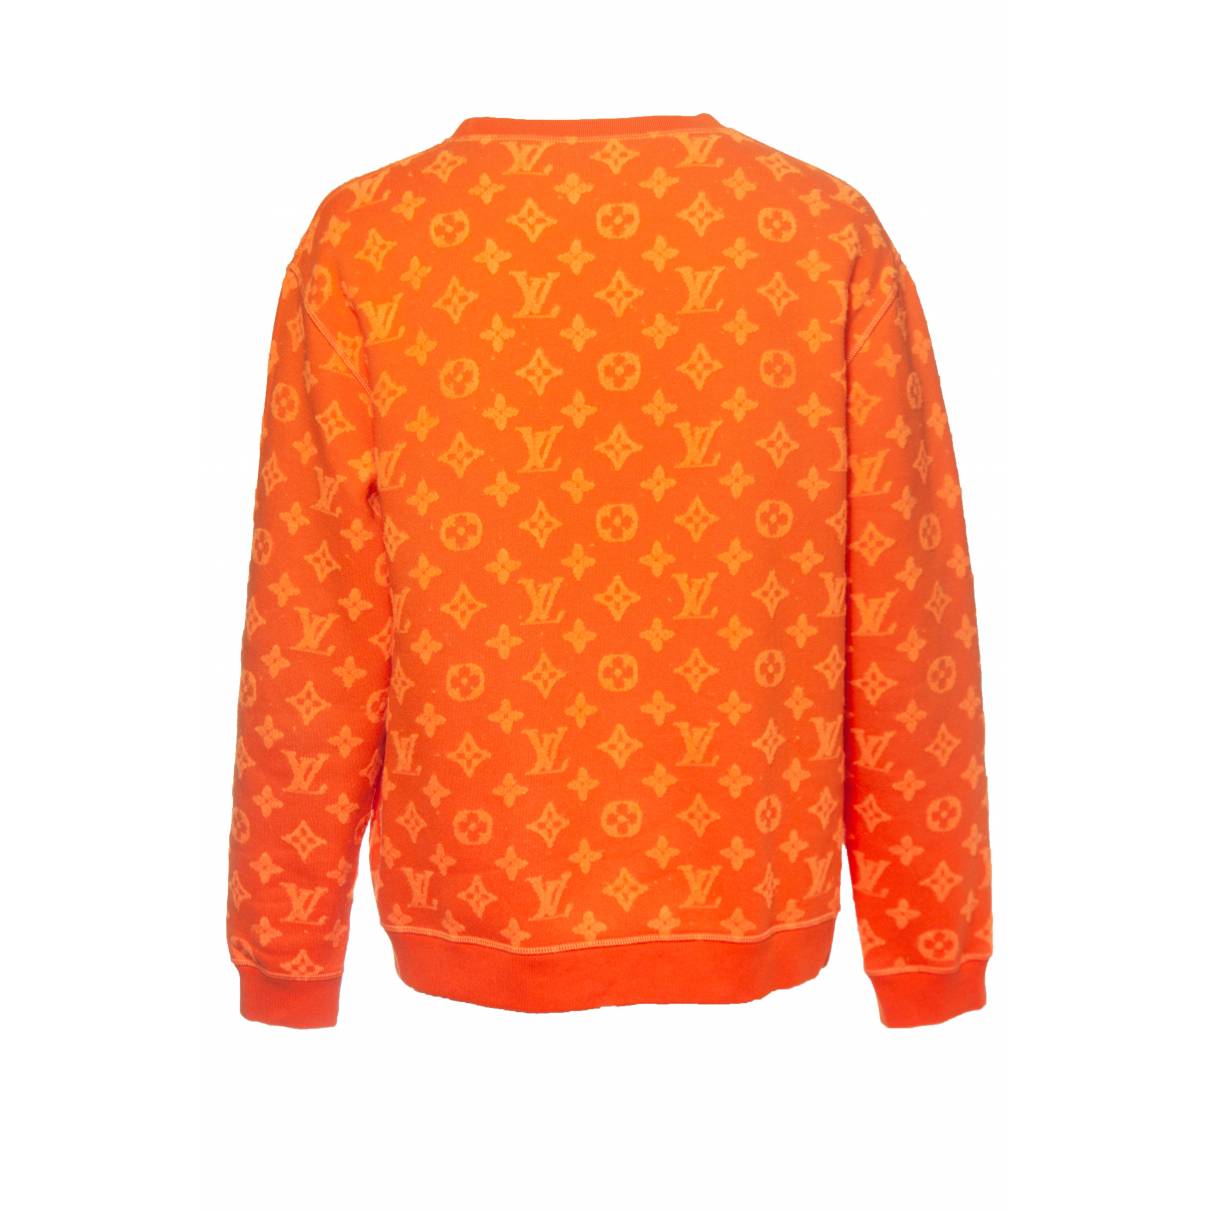 Sweatshirt Louis Vuitton Orange size XXL International in Cotton